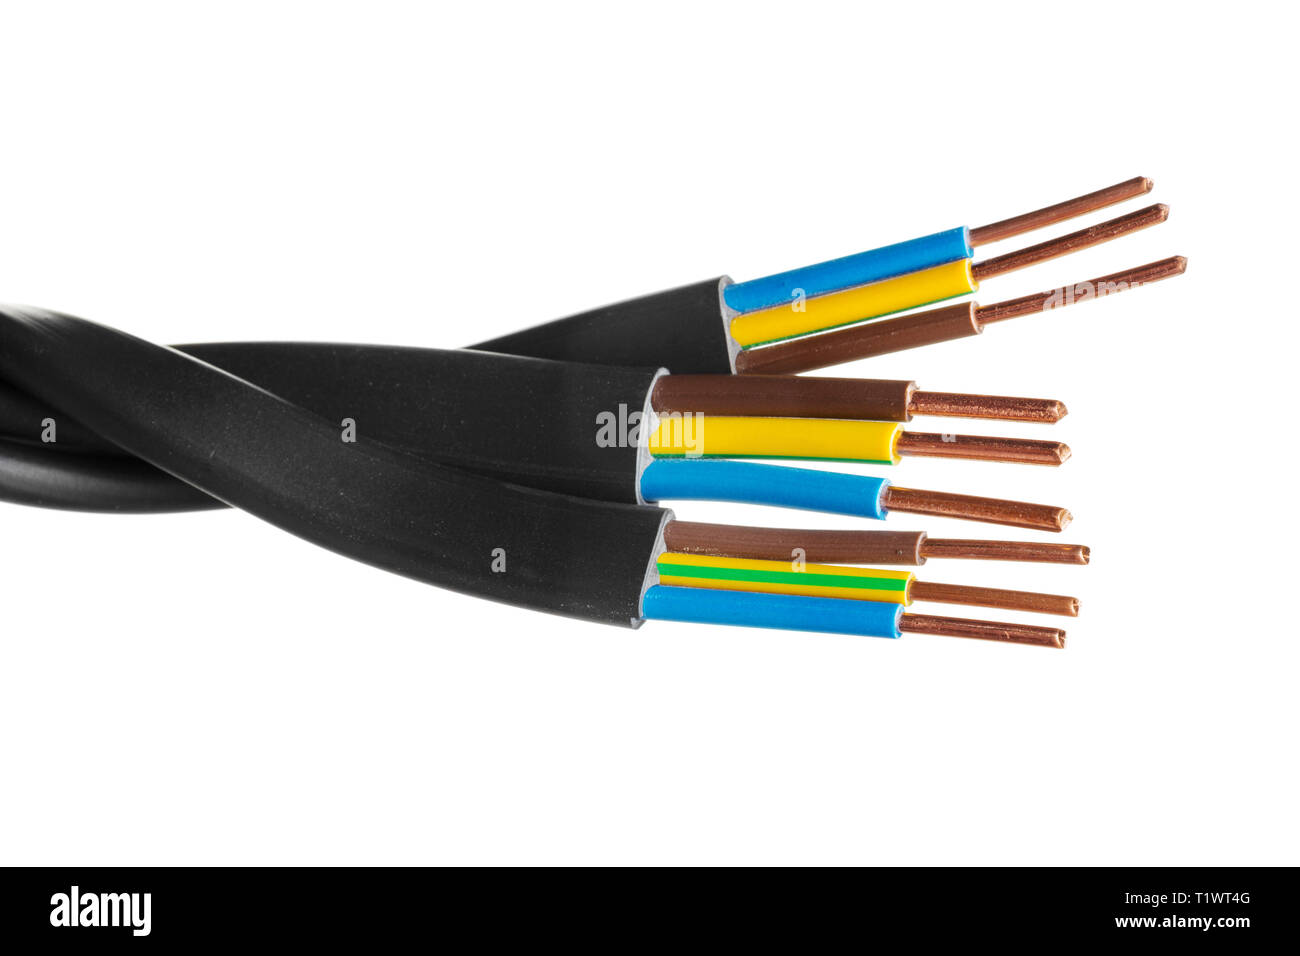 Elektrische geschirmtes Kabel mit viele Drähte isoliert auf weißem  Stockfotografie - Alamy